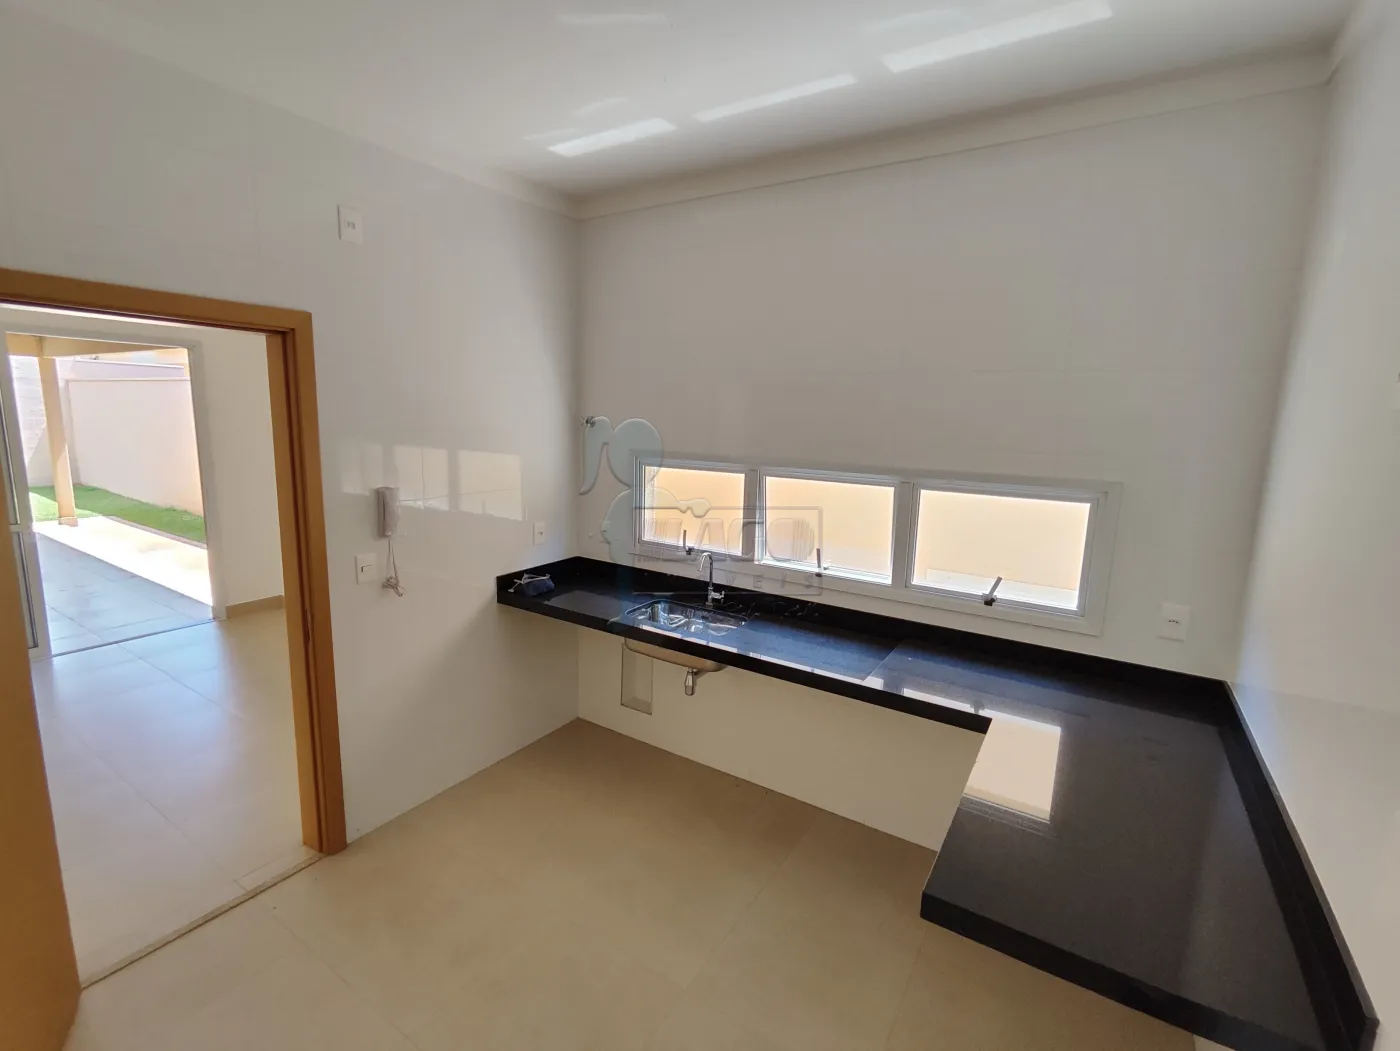 Comprar Casa condomínio / Padrão em Cravinhos R$ 950.000,00 - Foto 18